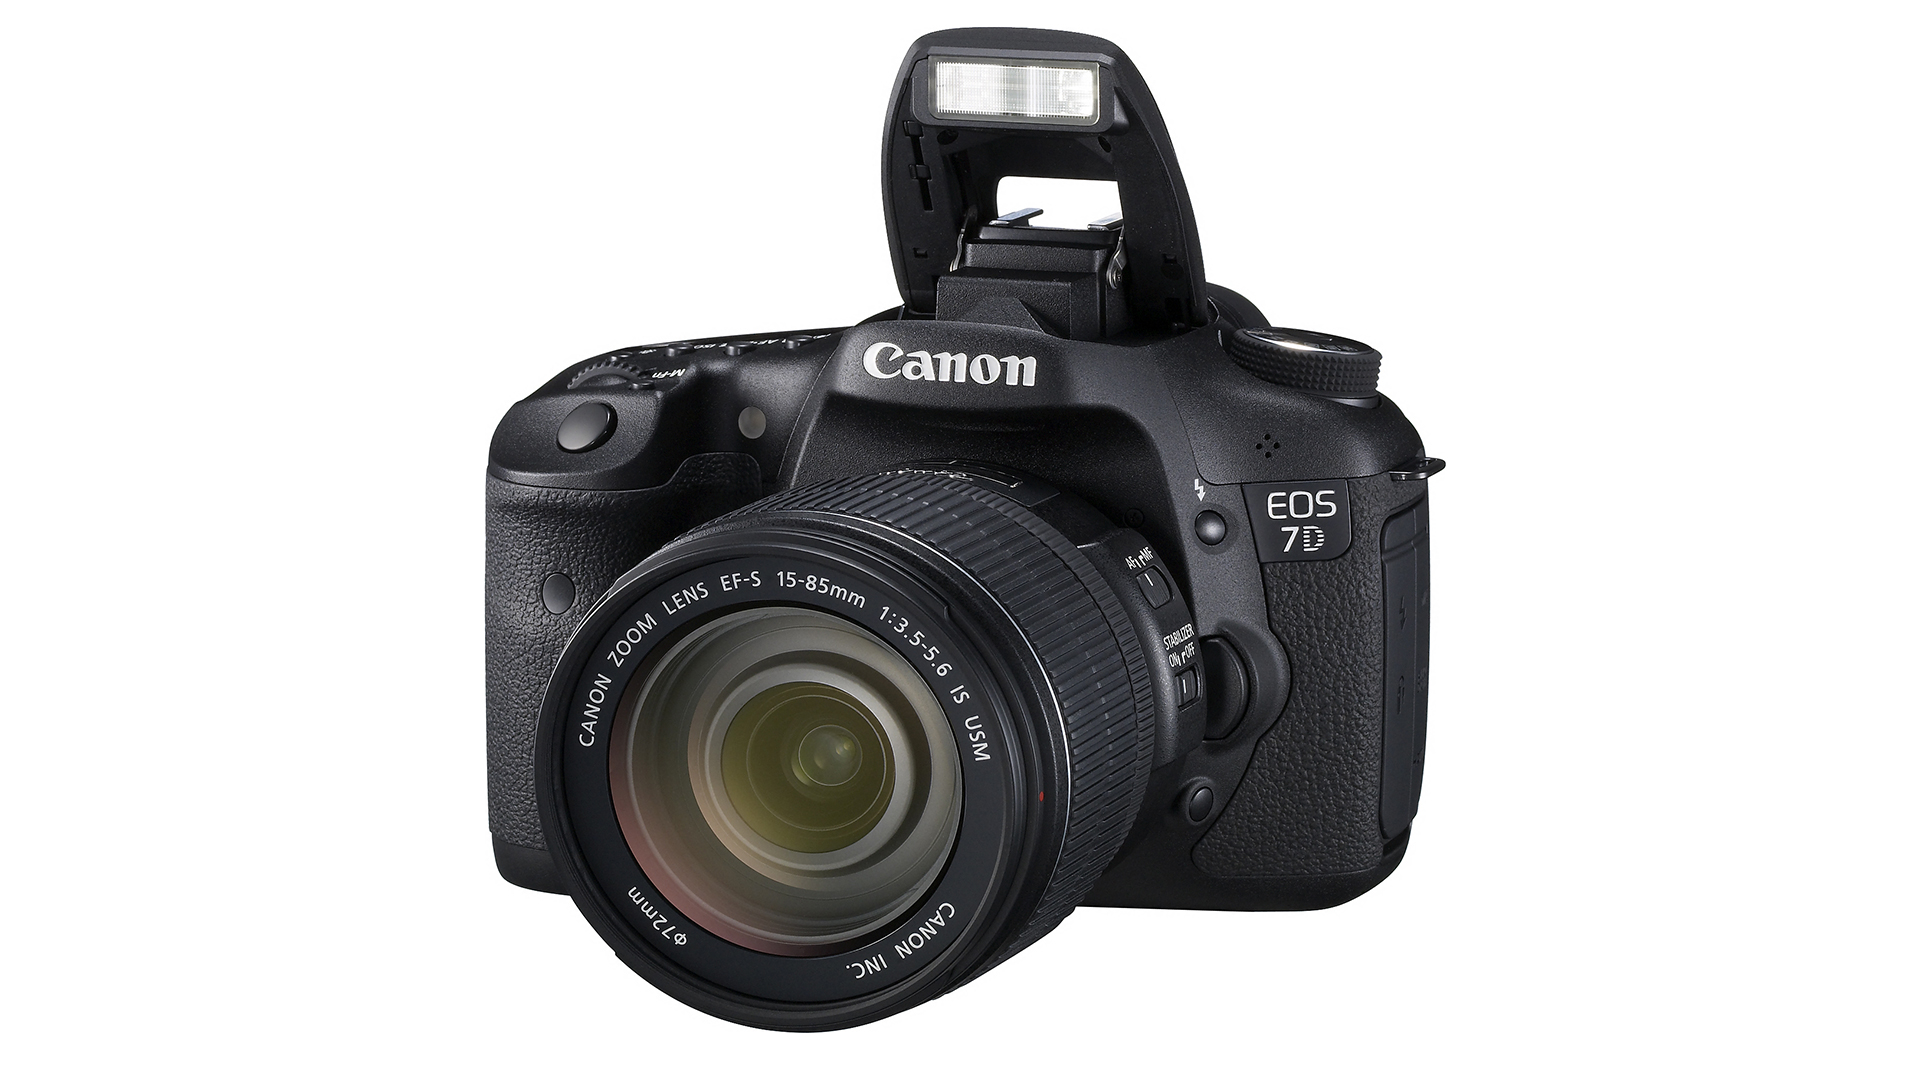 Canon EOS 70D, l’evoluzione della EOS 60D per videoamatori